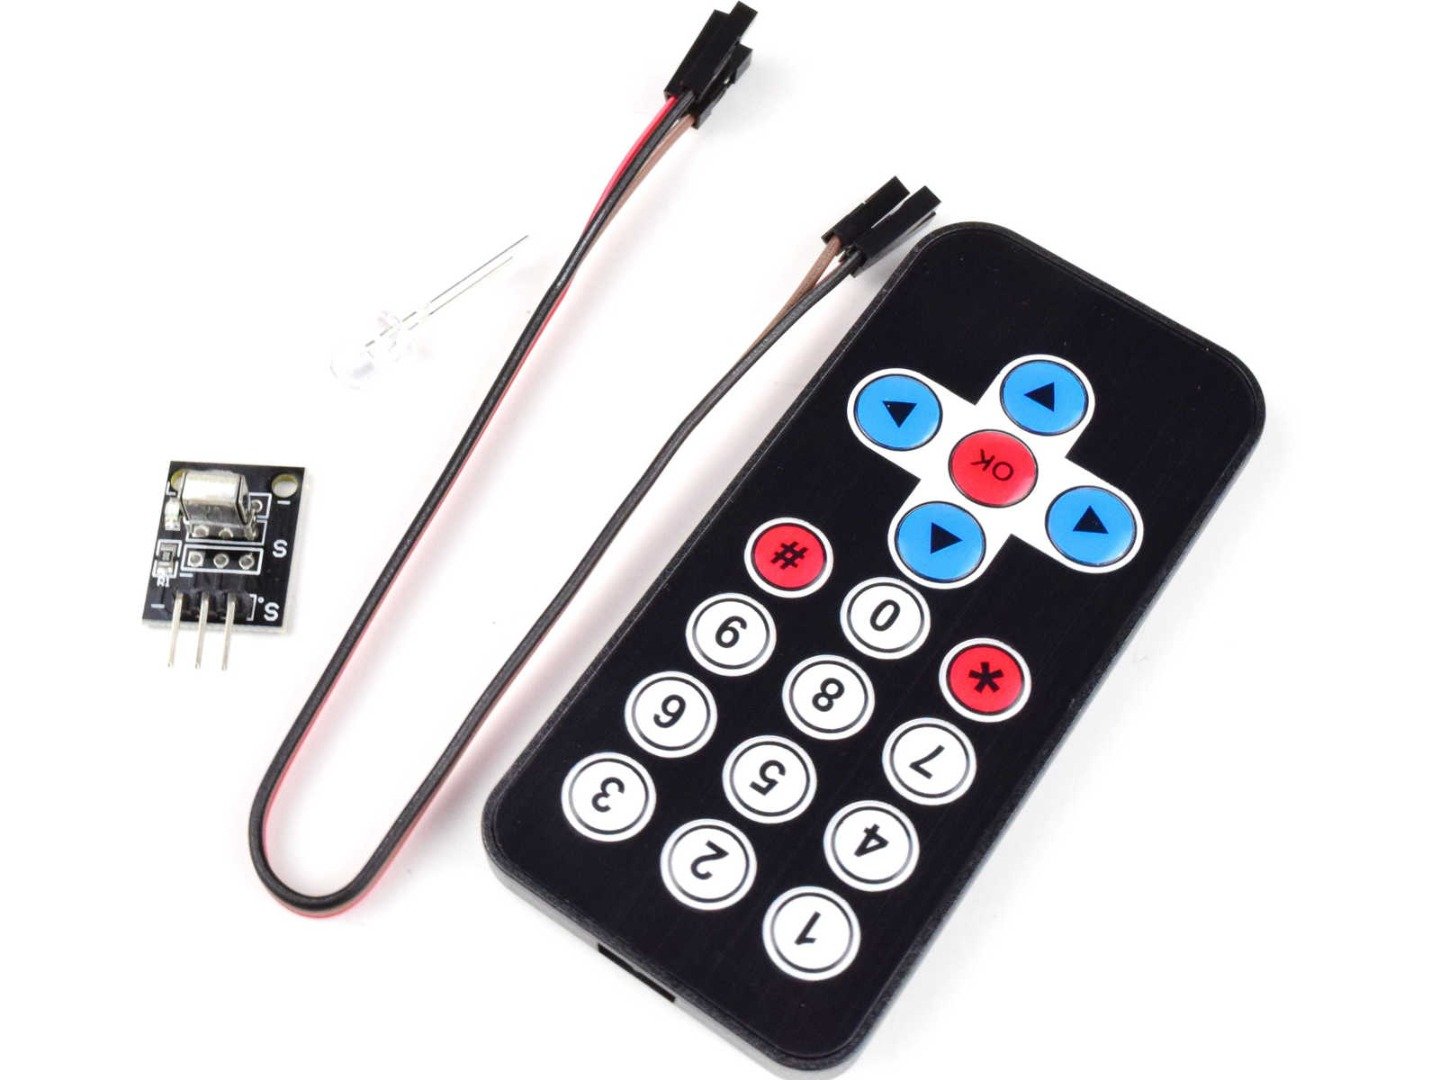 IR Remote Control Sender Receiver Kit for Arduino etc. 10